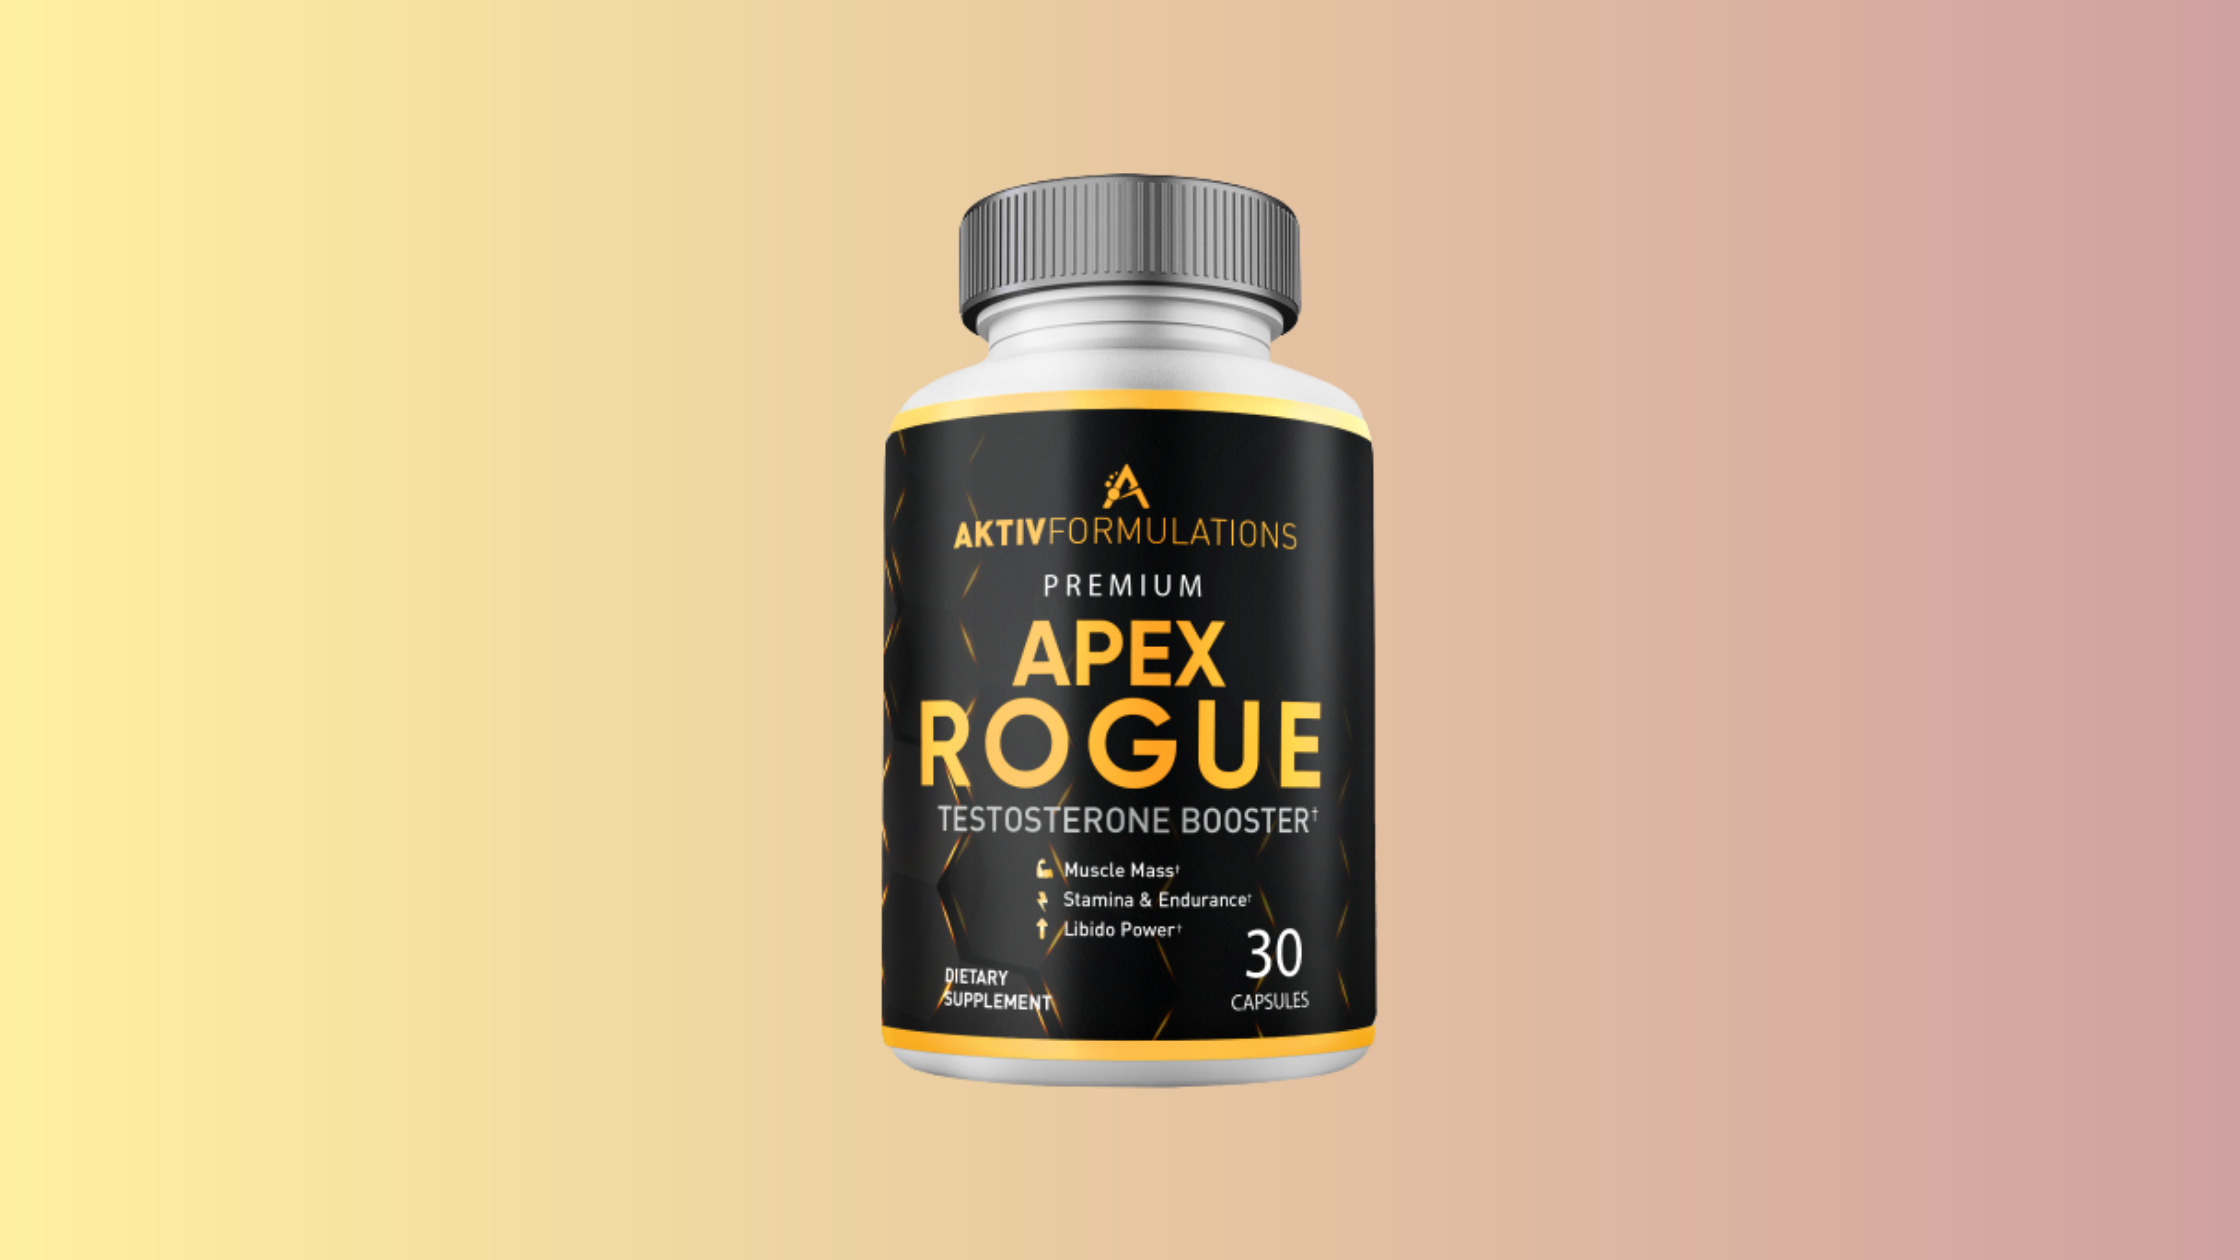 Apex rogue Reviews